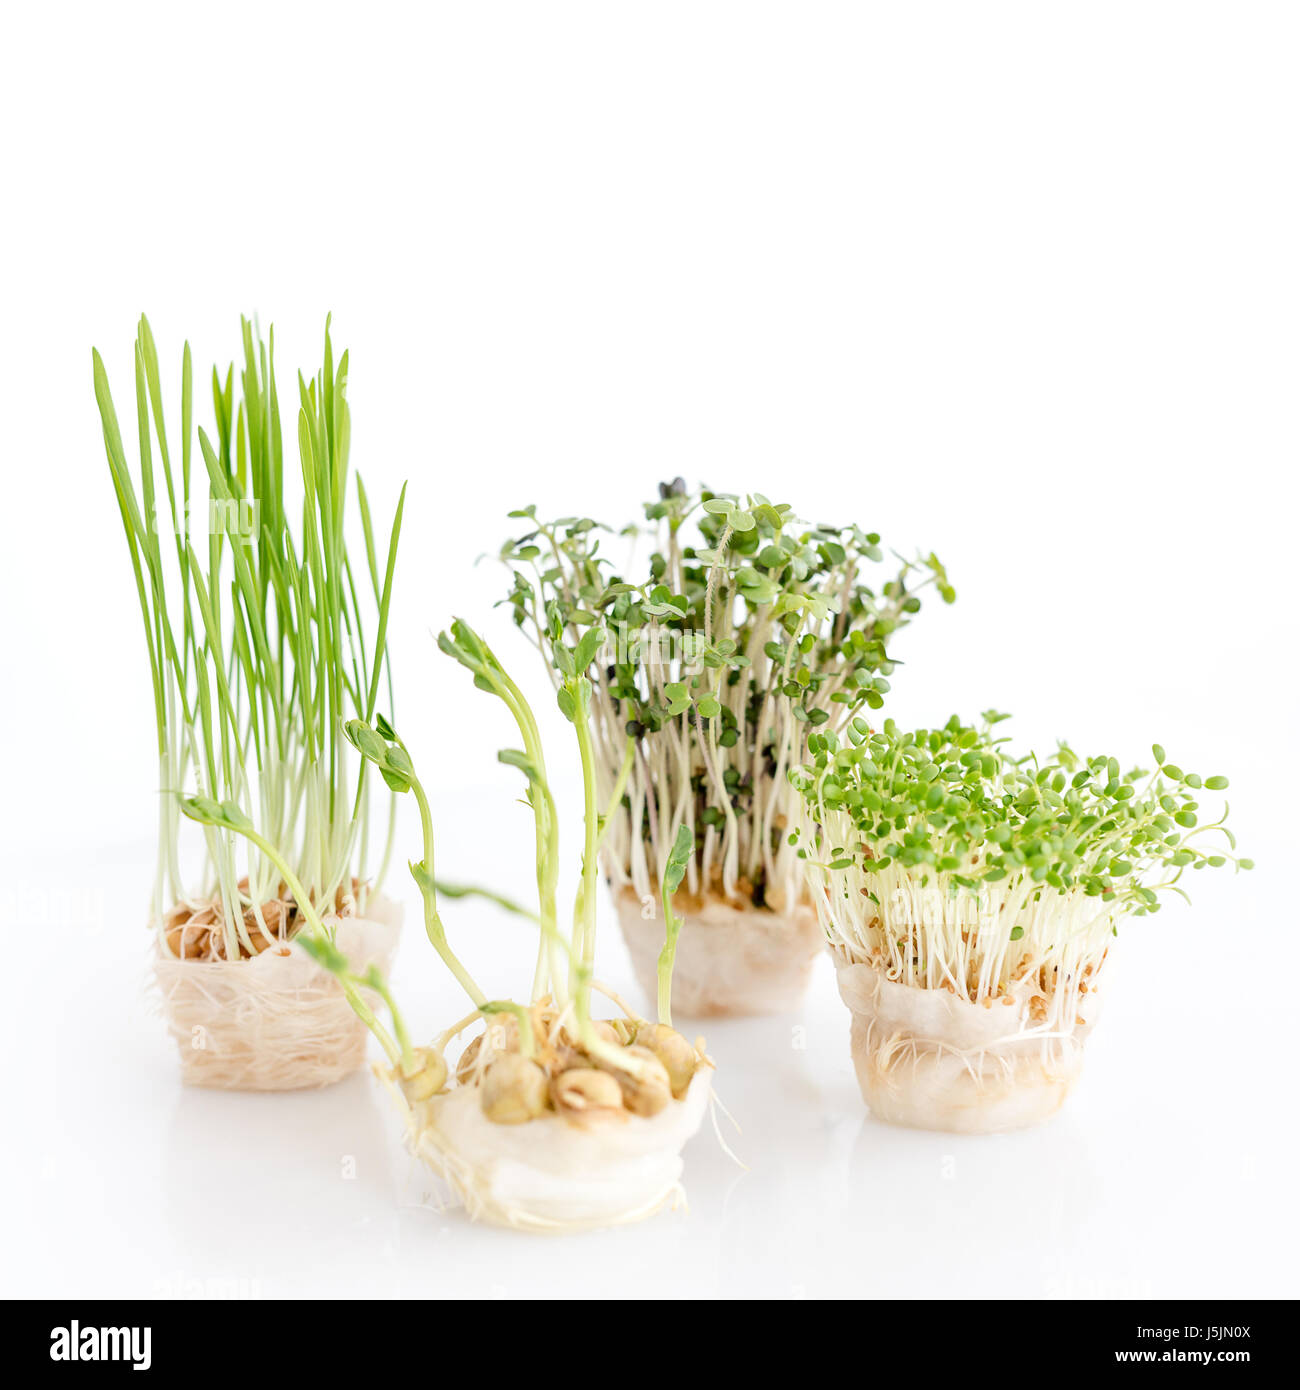 Crescente microgreens su sfondo bianco. Mangiare sano concetto di fresco giardino produce biologicamente cresciuto come un simbolo di salute. Foto Stock